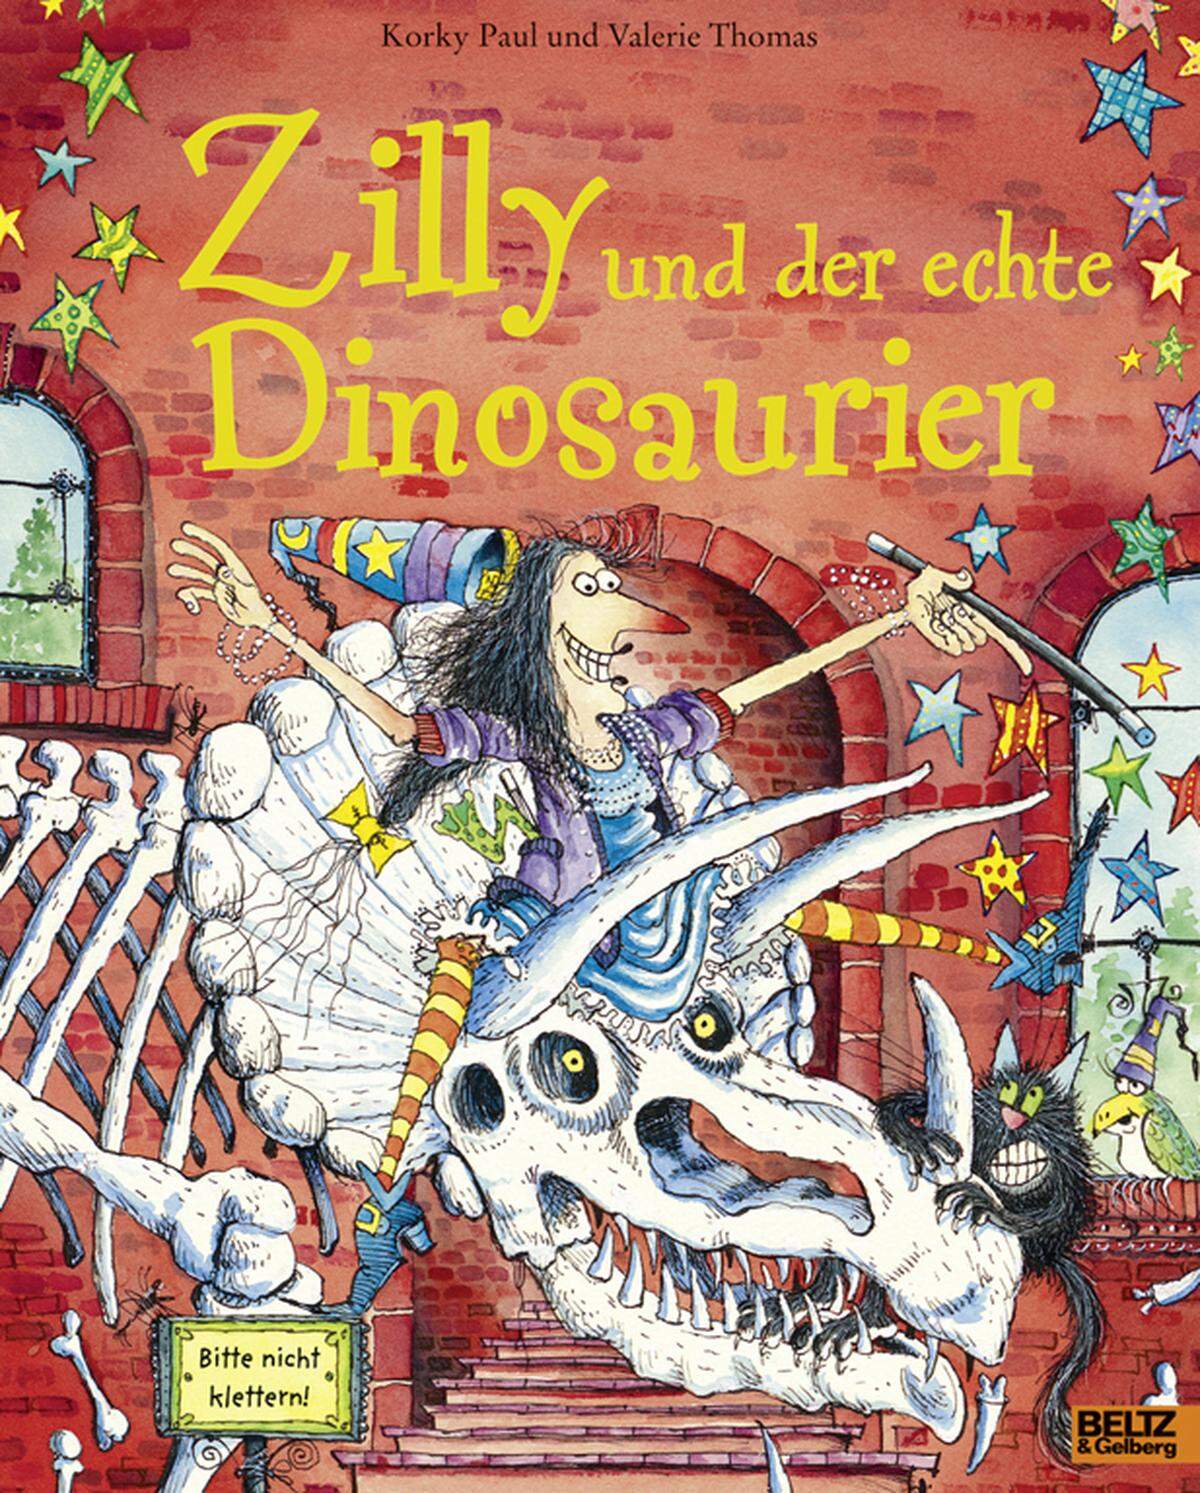 Der Reiz von Zilly, der Zauberin ist eine charmante Kombination aus realem Alltag (von Wäscheleine bis Internet-Recherche), Detailreichtum (ihr Besen hat Steigbügel) und phantastischen Ausflügen. Im neuesten Band "Zilly und der echte Dinosaurier" (BELTZ und Gelberg) reist die quirlig-chaotische Hexe in die Kreidezeit, um einen Triceratops möglichst real zu malen. Eine glänzende Idee - da sind sich Zilly und kindliche Leser einig. Alter: Ab vier Jahren.